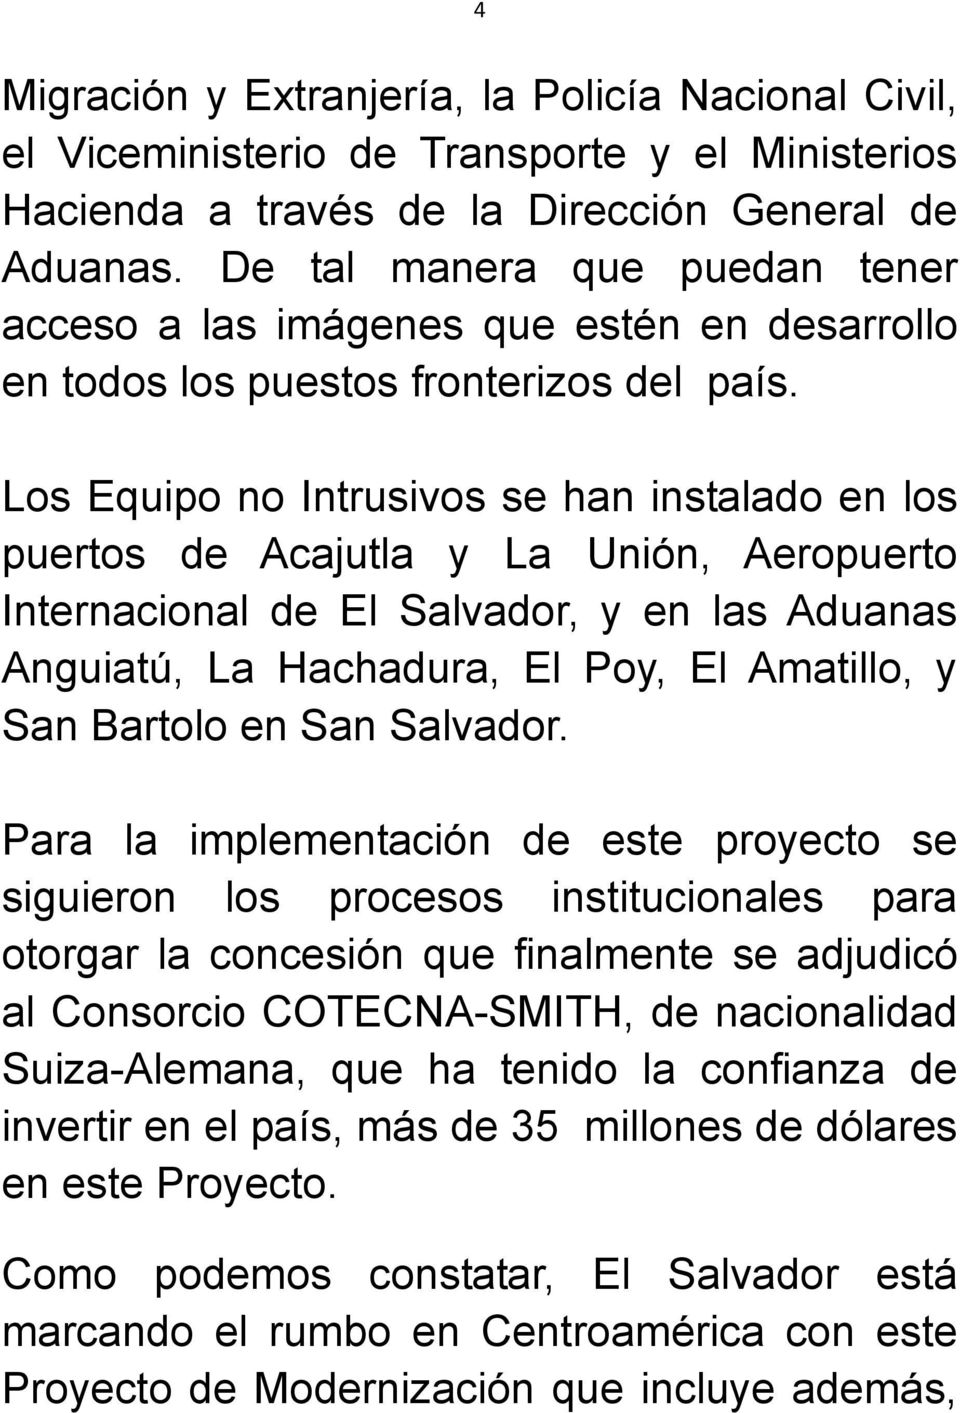 Los Equipo no Intrusivos se han instalado en los puertos de Acajutla y La Unión, Aeropuerto Internacional de El Salvador, y en las Aduanas Anguiatú, La Hachadura, El Poy, El Amatillo, y San Bartolo